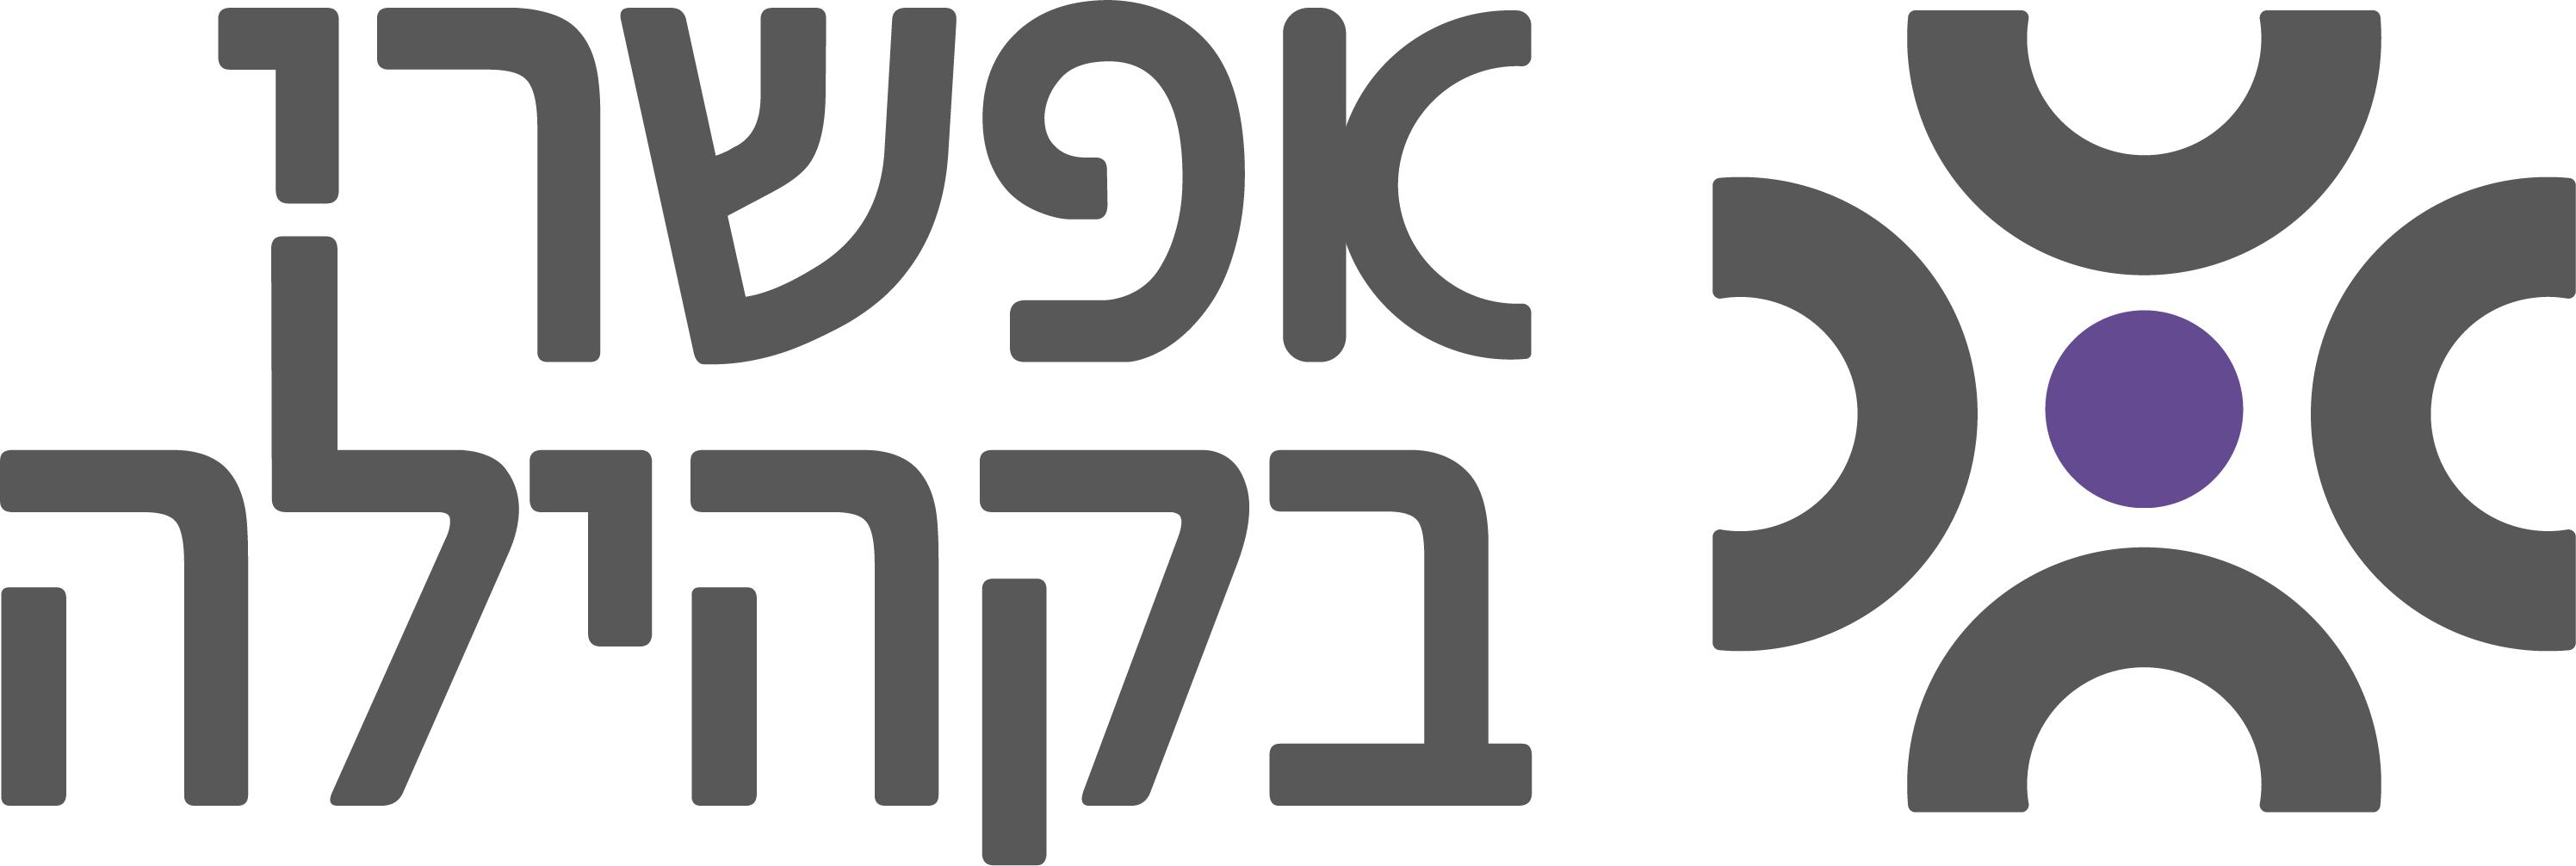 לוגו אפשרי בקהילה